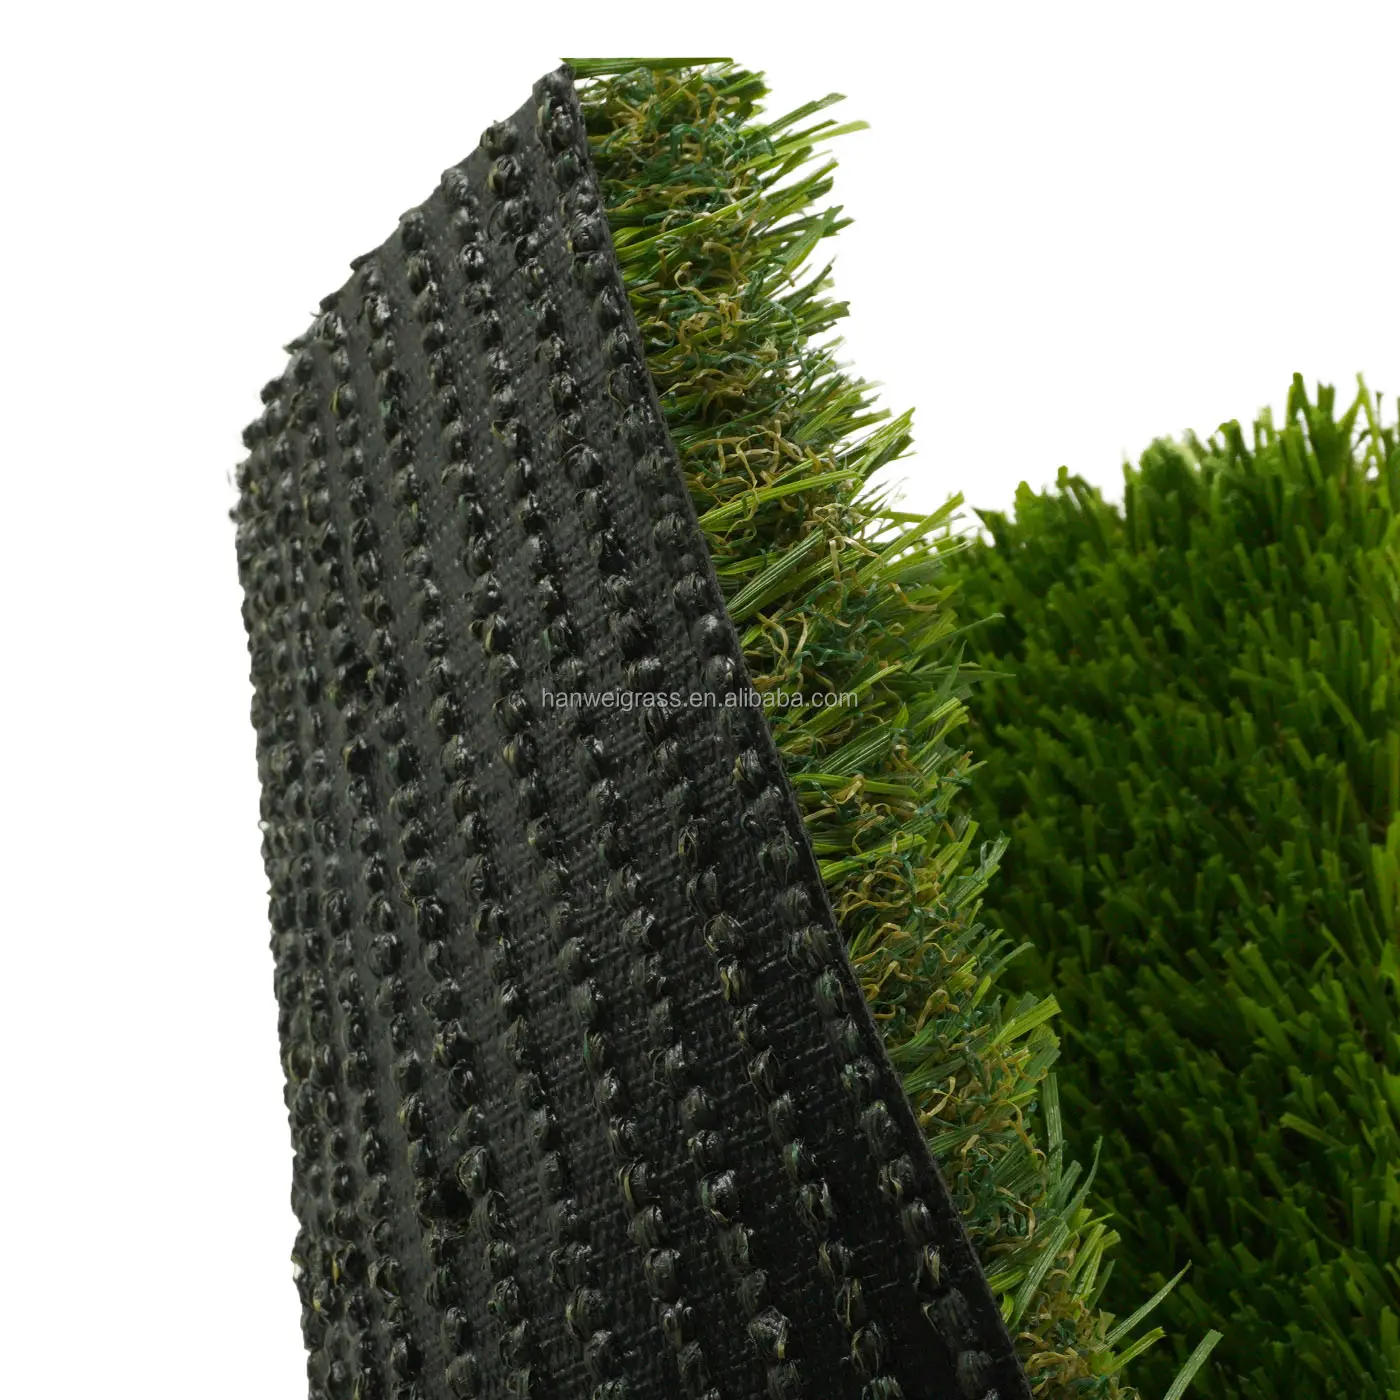 Hanwei sentetik-çim her türlü bahçe eğlence yerleri için uygundur. Yumuşak sentetik çim futbol sahası çim sentetik çim